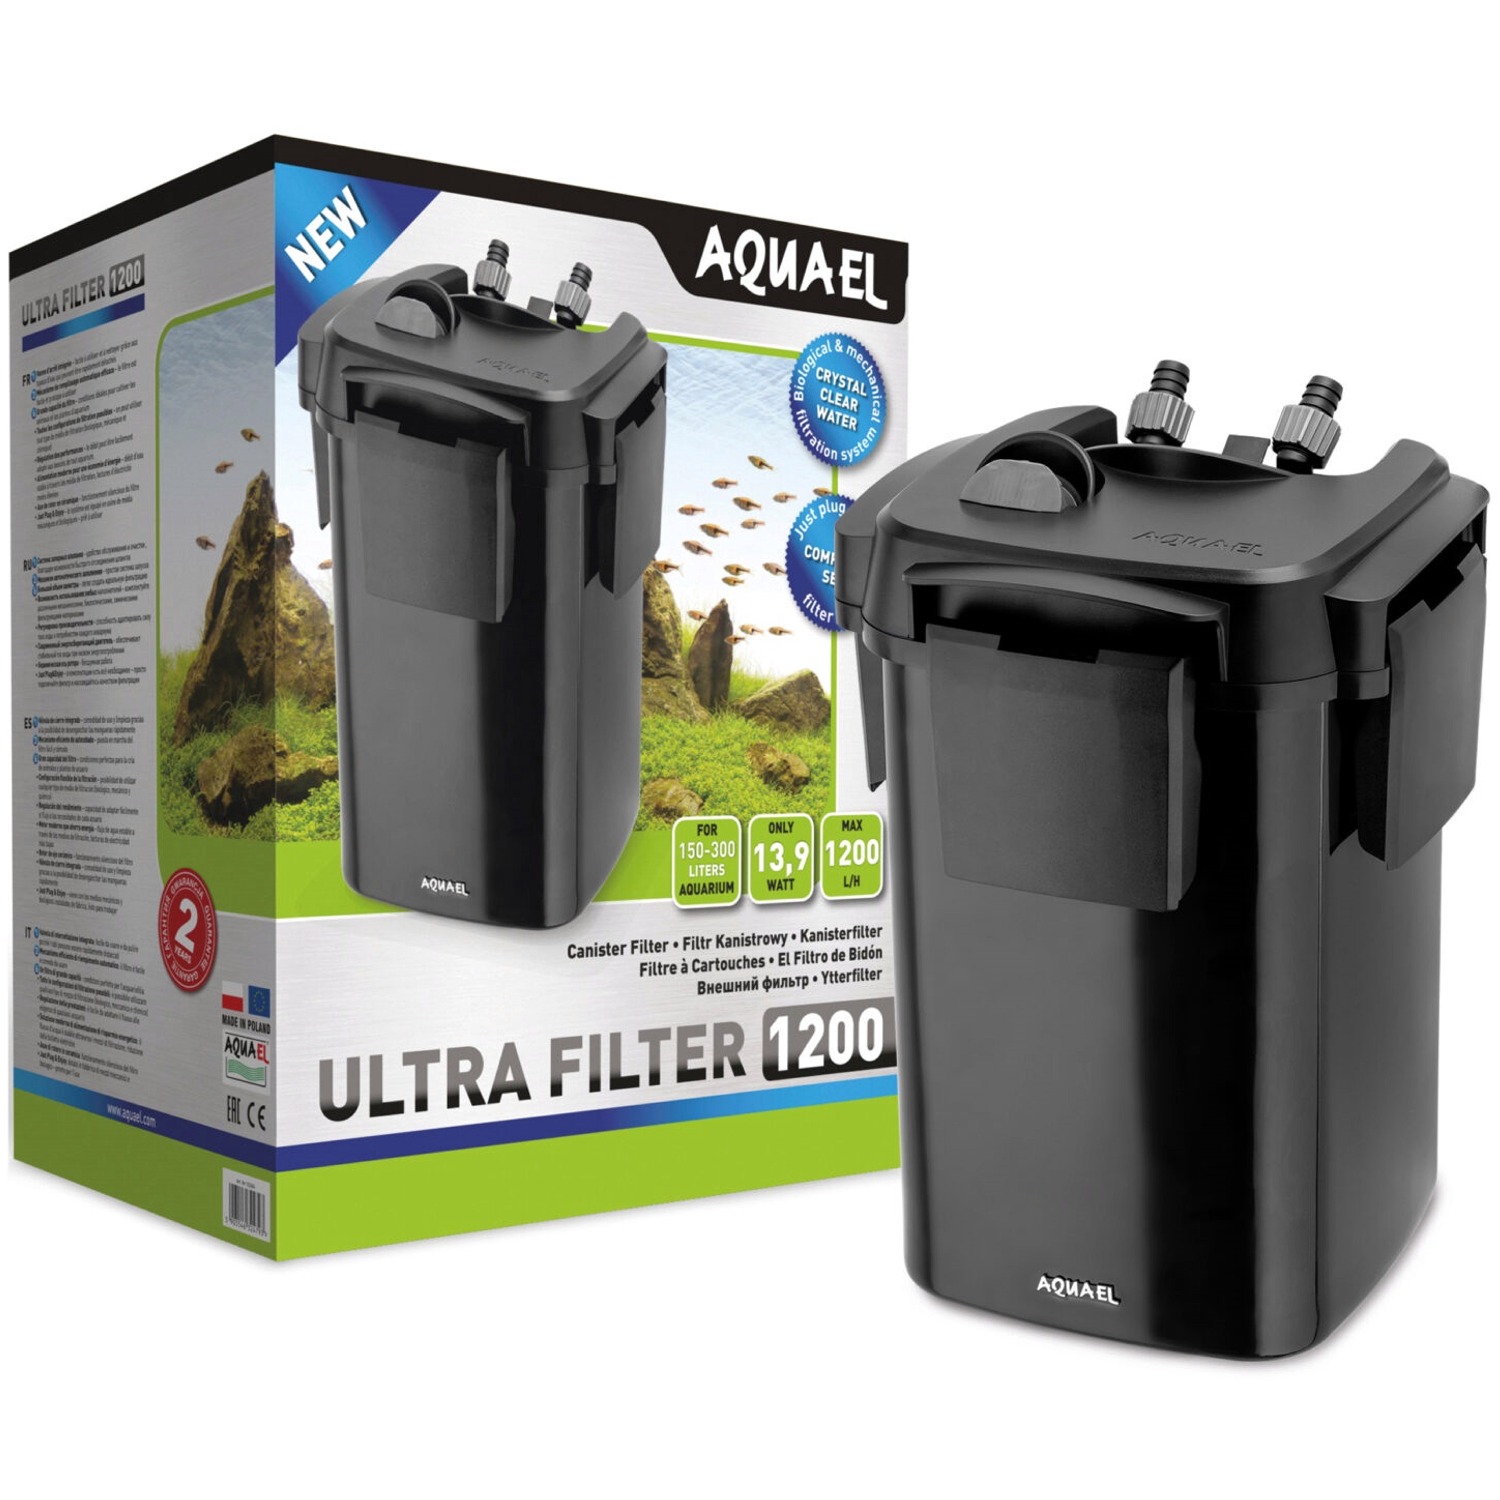 AQUAEL Ultra Filter 1200 filtre externe 1200 L/h pour aquarium de 160 à 300 L